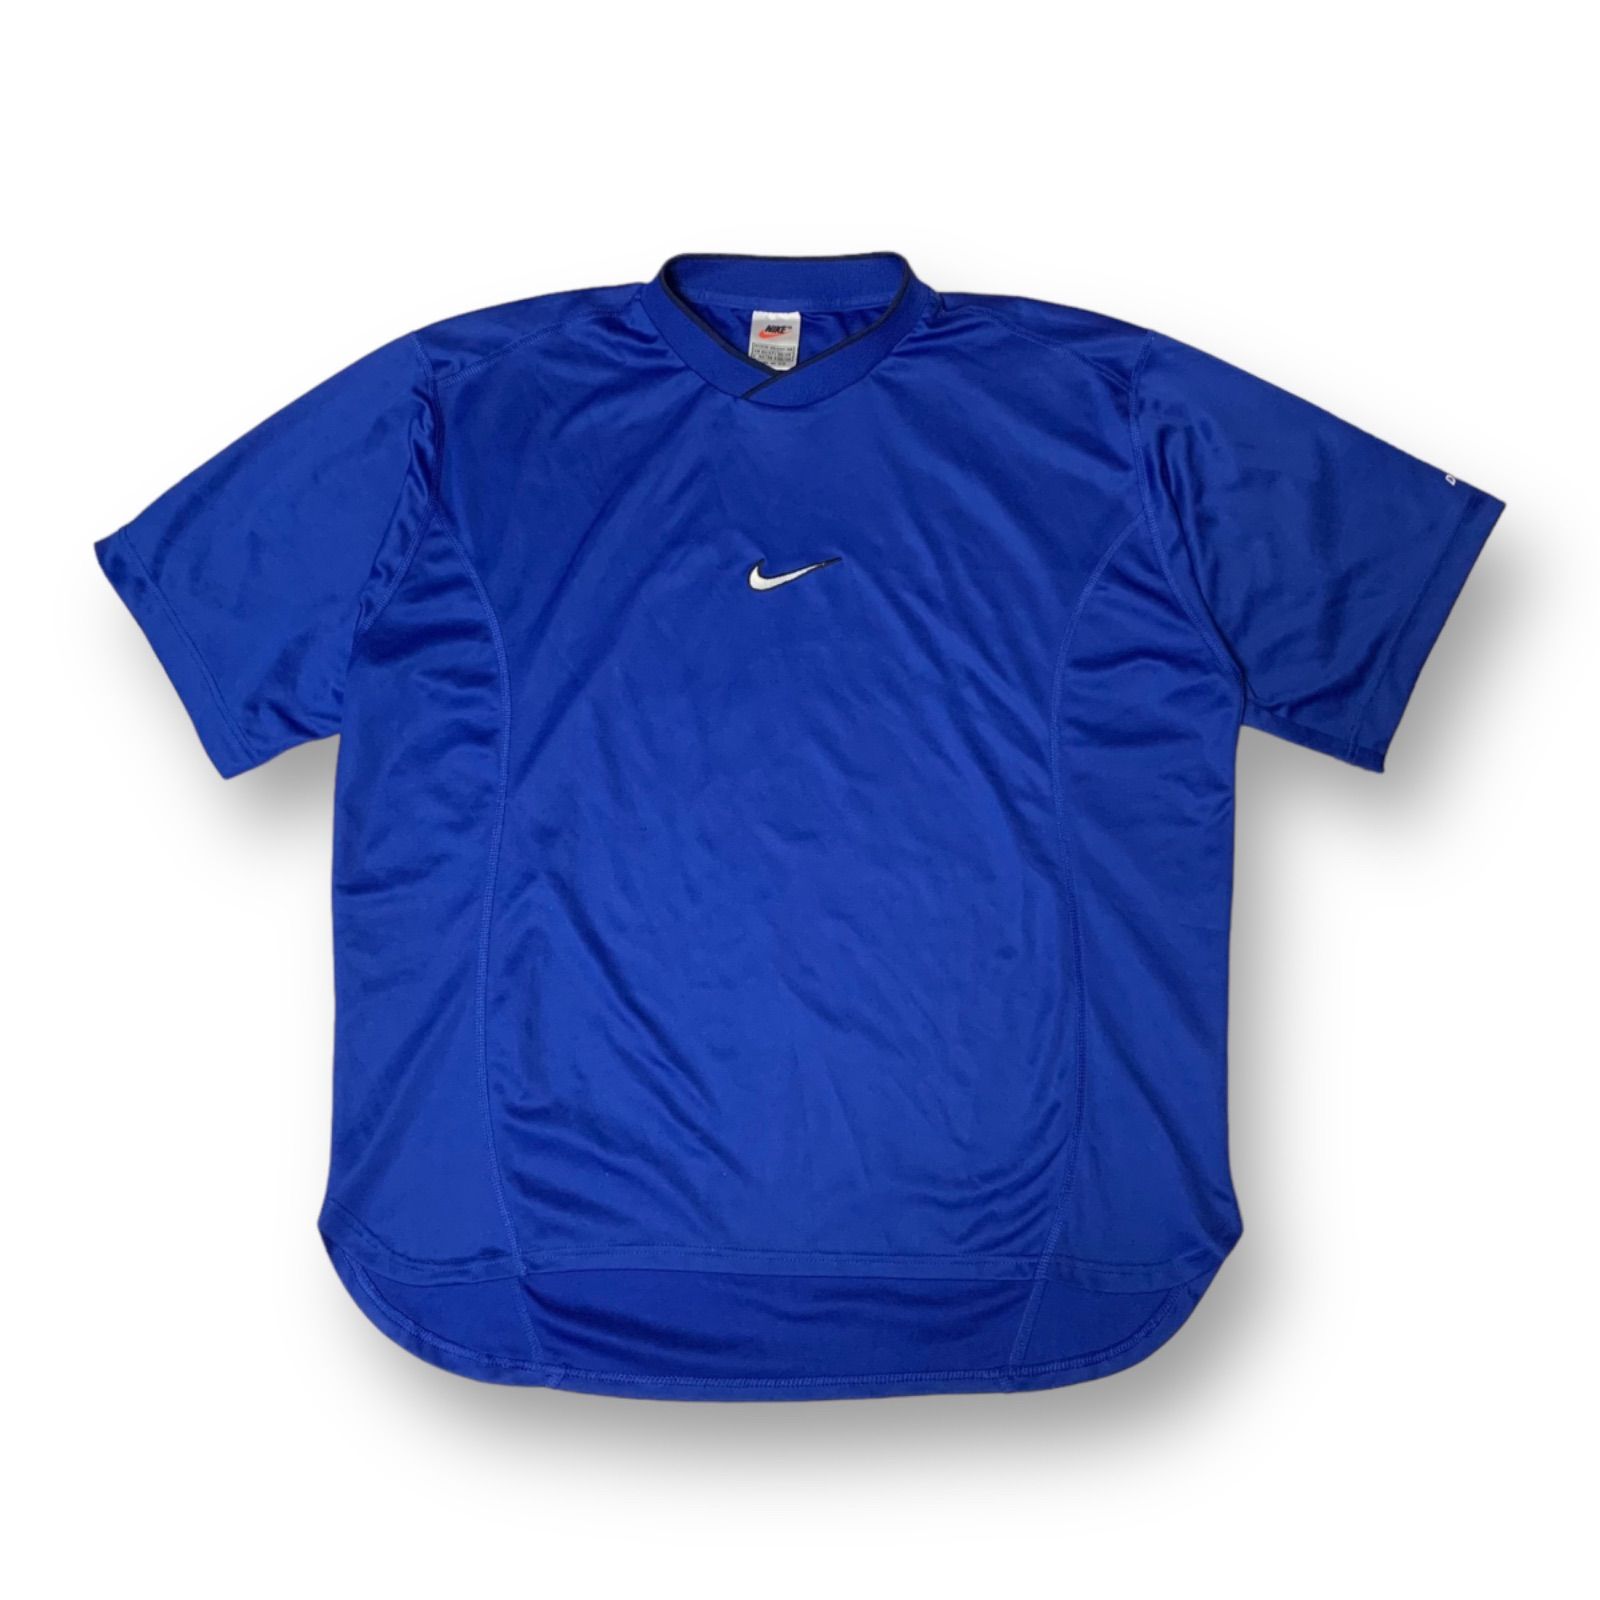 7,050円ナイキゲームシャツ90s T shirt soccer NIKE